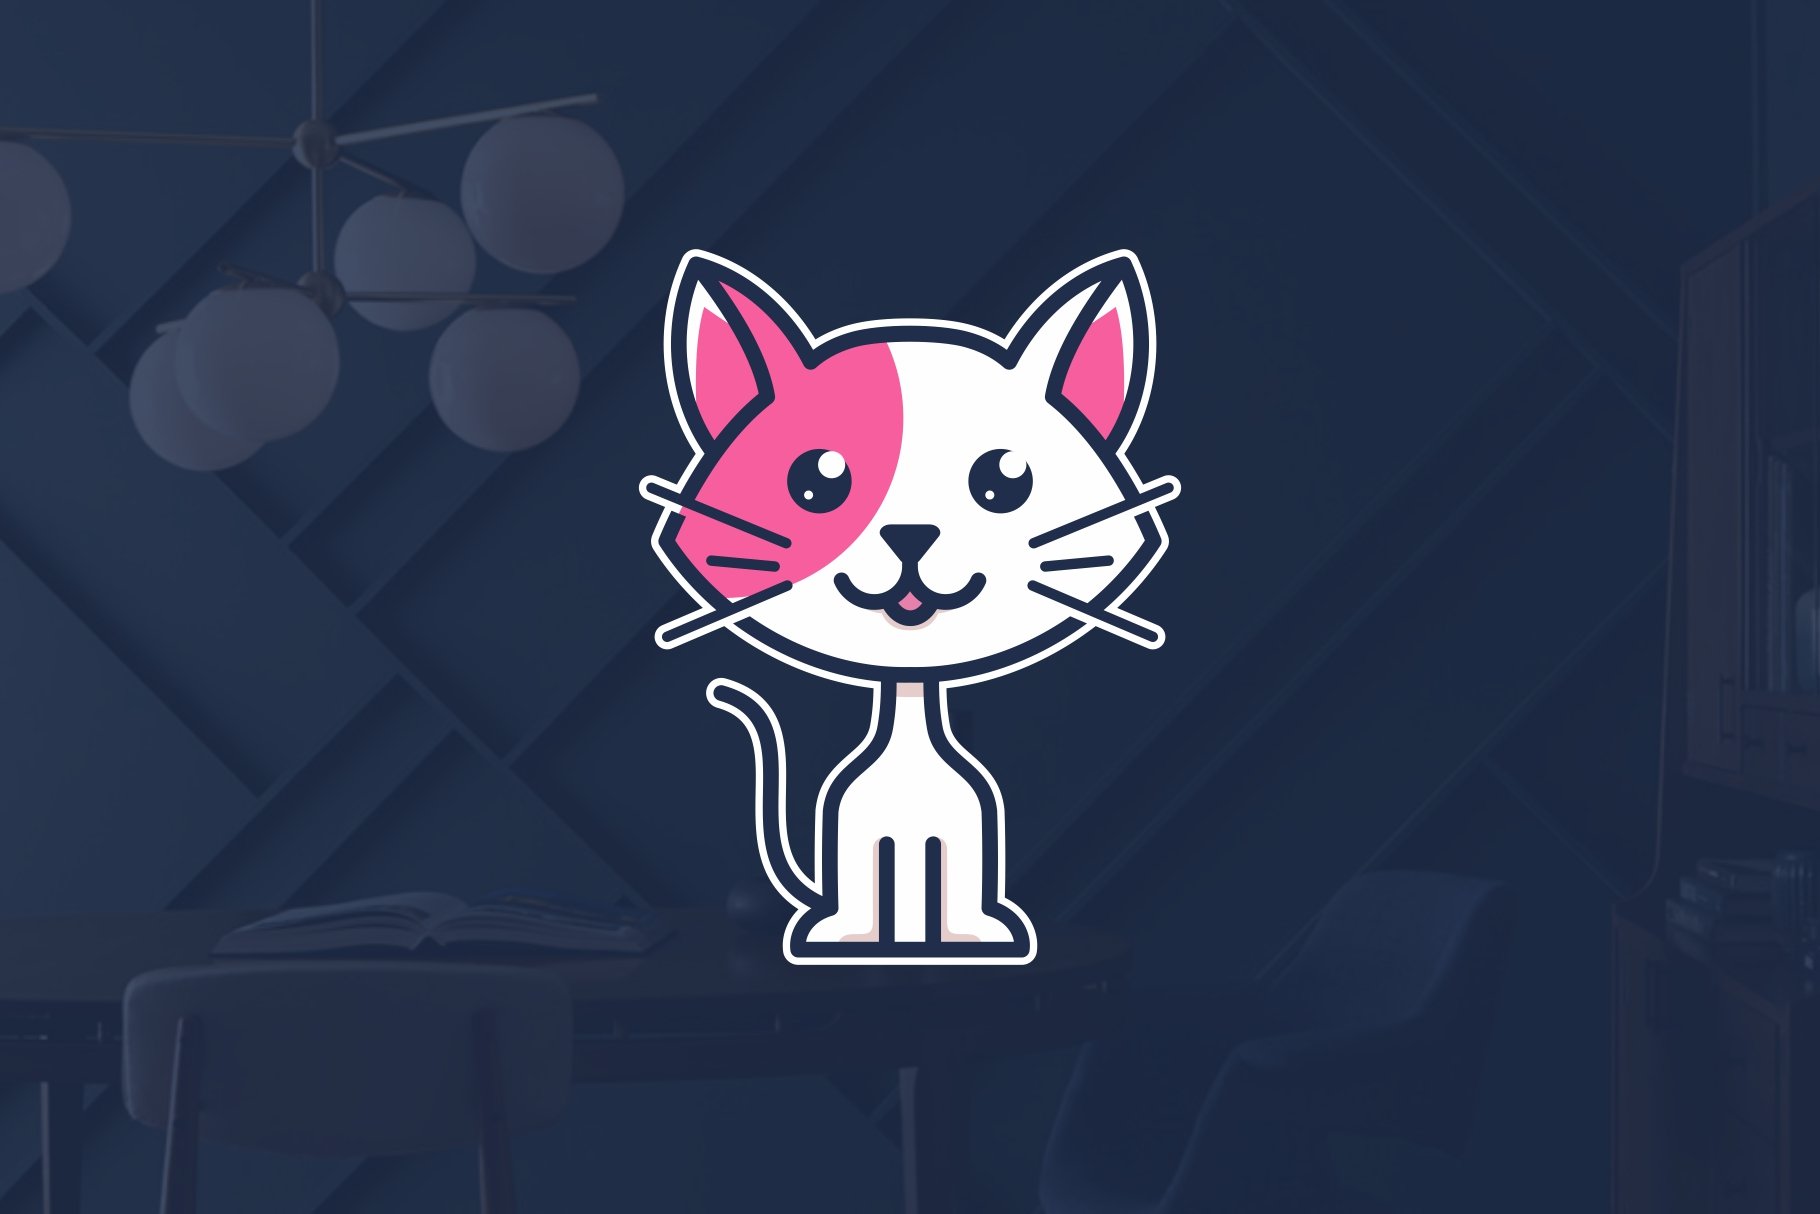 Cute Cat Kitten Pet Logo cover image.